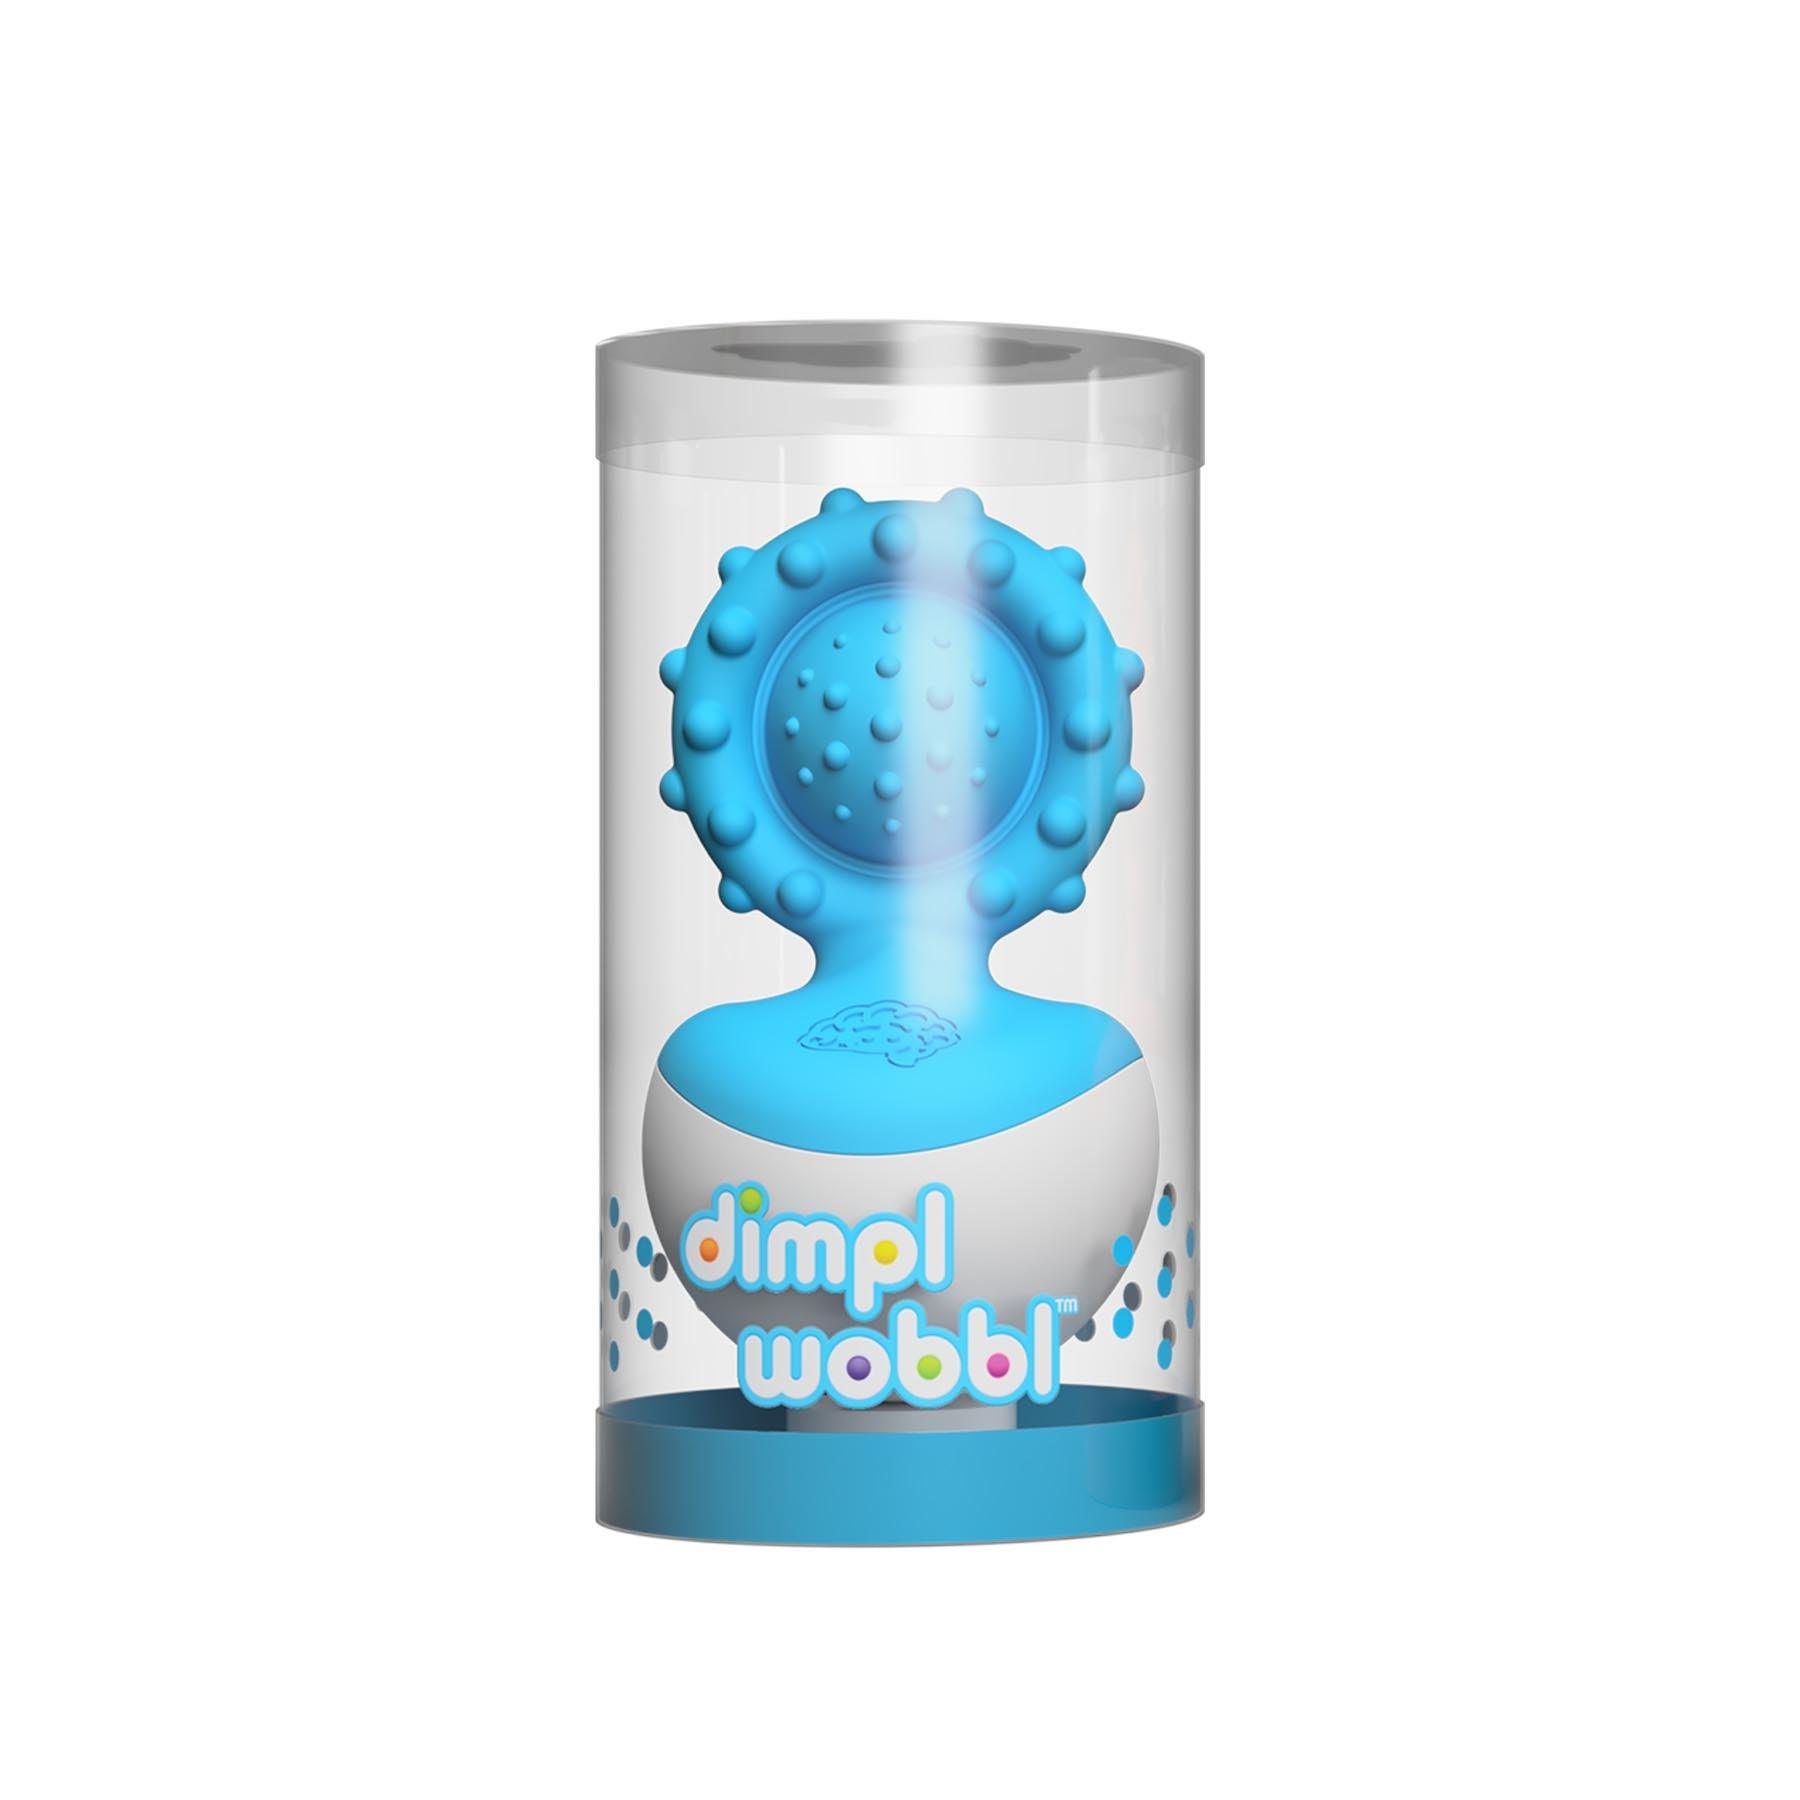 Dimpl Wobl - Bleu - La Ribouldingue